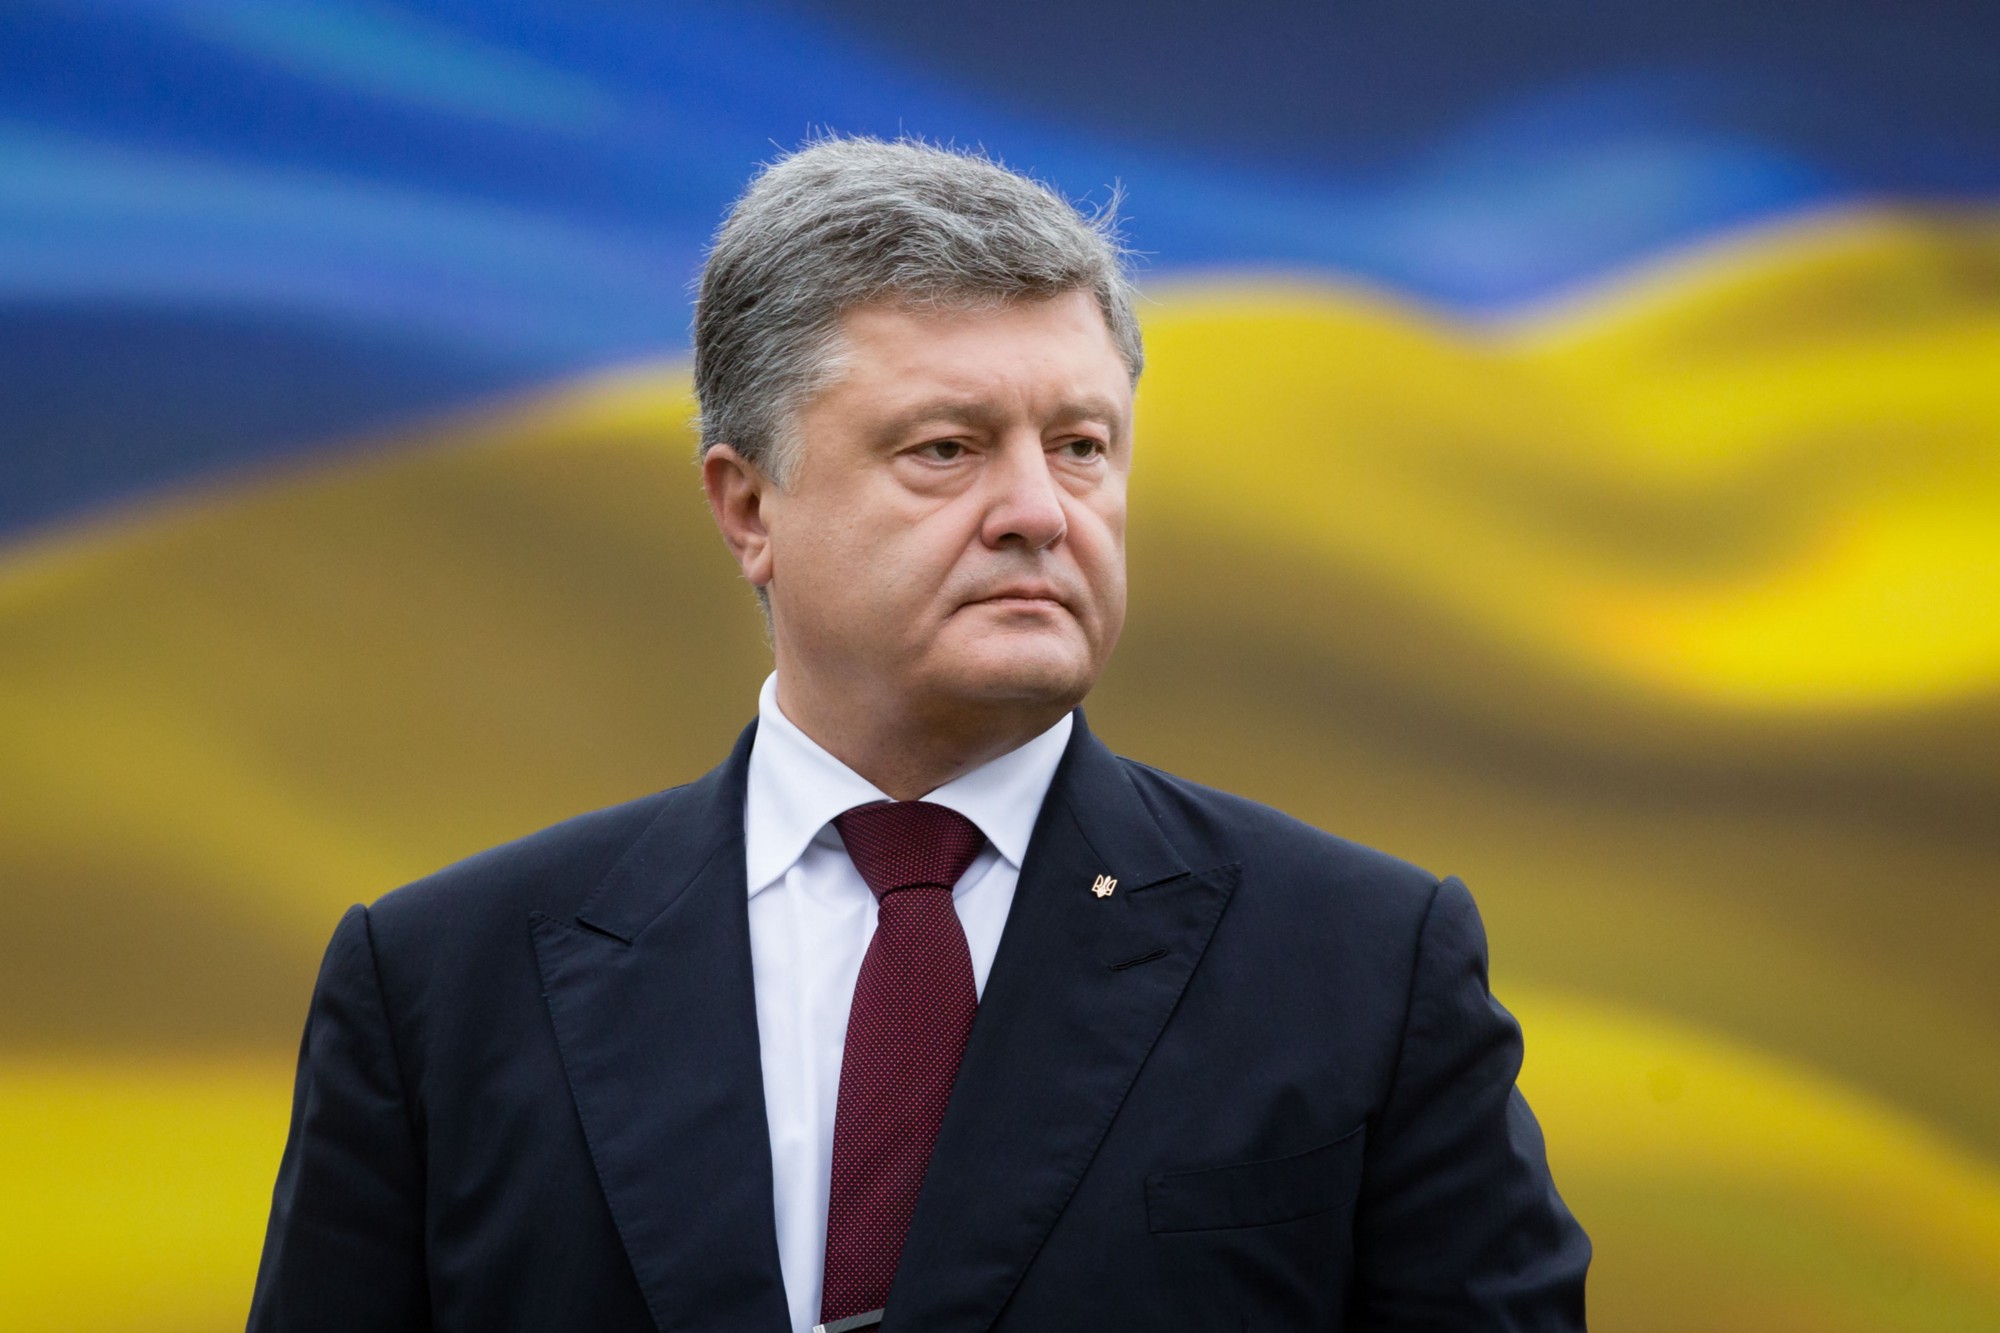 Порошенко выступил за проведение налоговой амнистии в Украине: стали известны детали важной встречи президента с бизнес-сообществом 